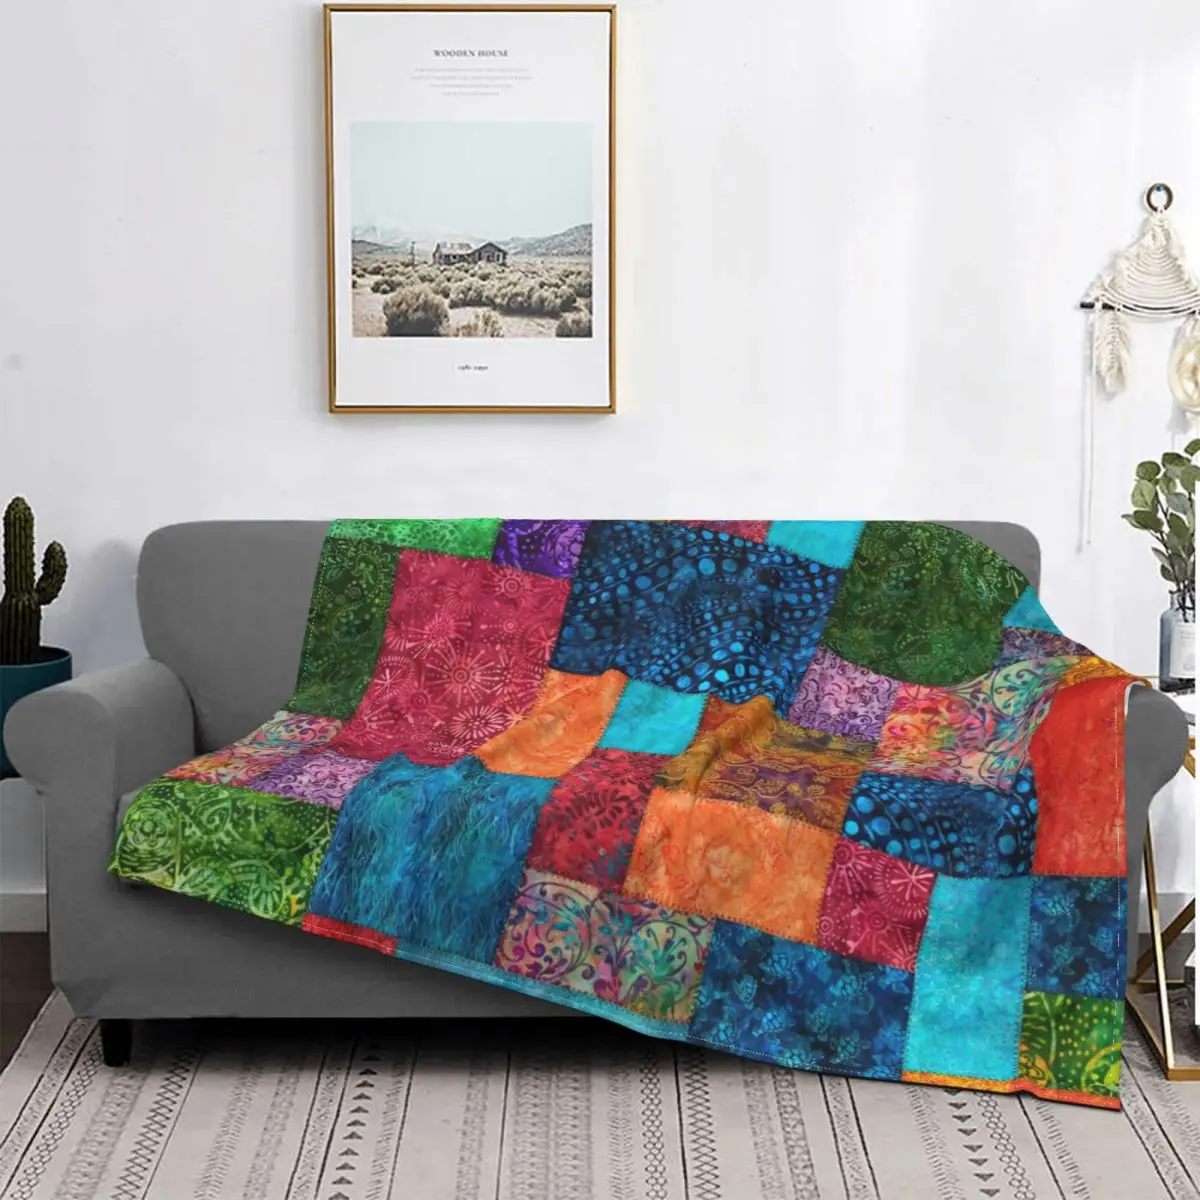 

Batik-Manta acolchada de franela suave y cálida para sofá, colcha de terciopelo, estilo bohemio Hippie, geométrico, felpa